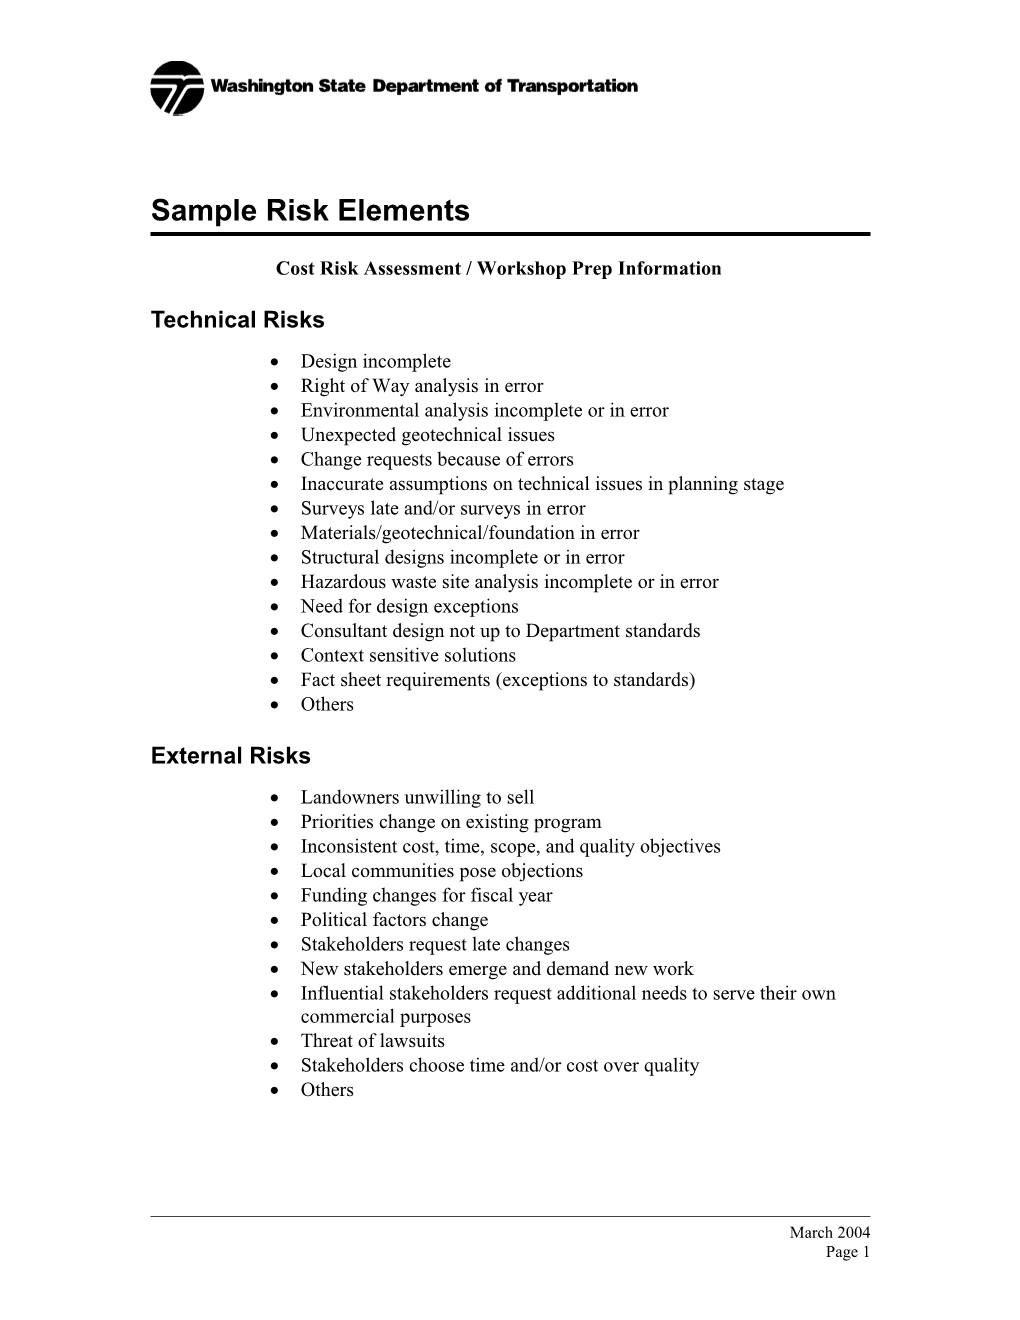 Cost Risk Assessment / Workshop Prep Information